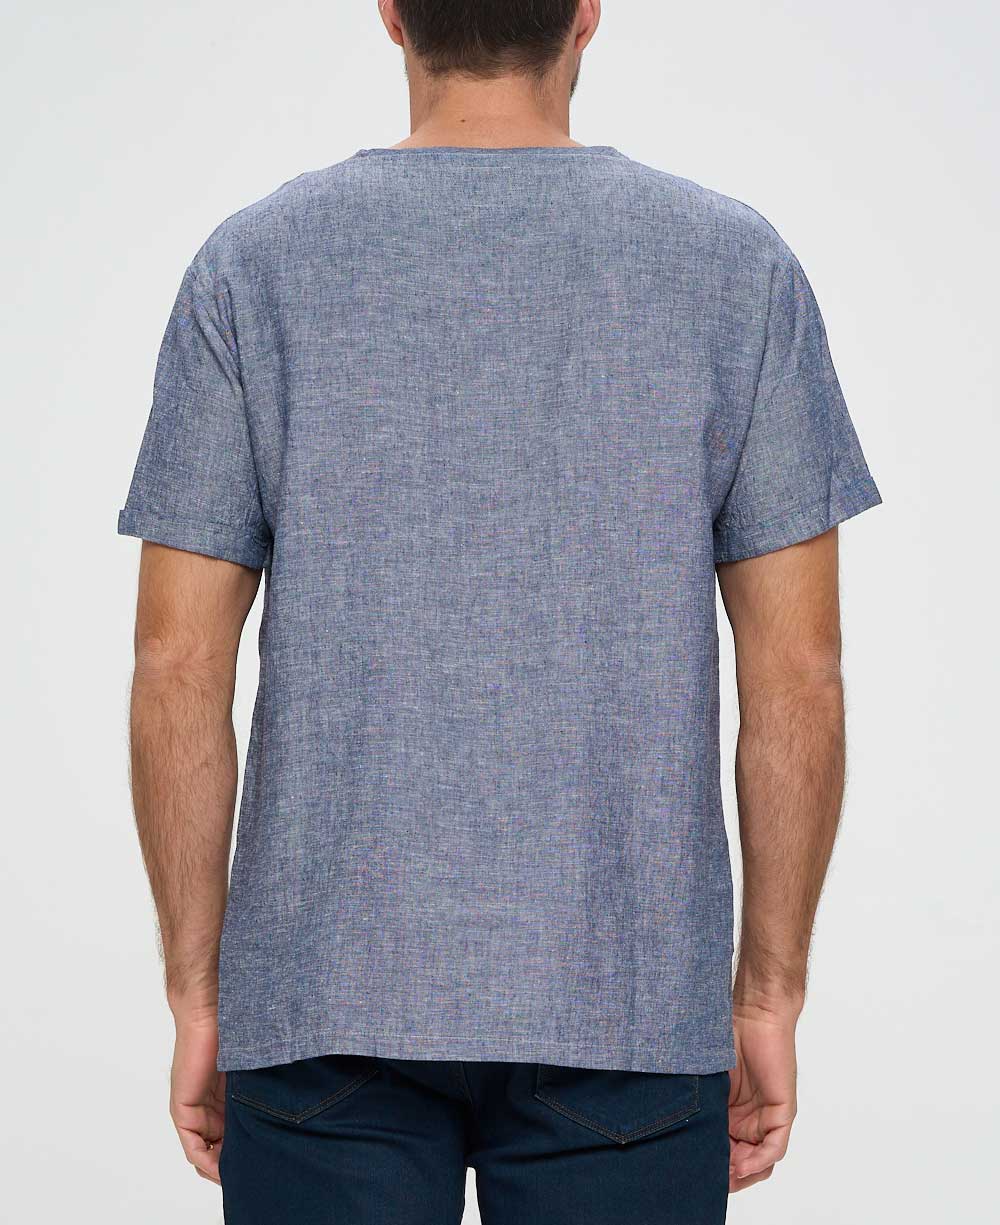 Men’s Be Here Now Blue Linen Inspirational Kurta Shirt - Shirts & Tops S